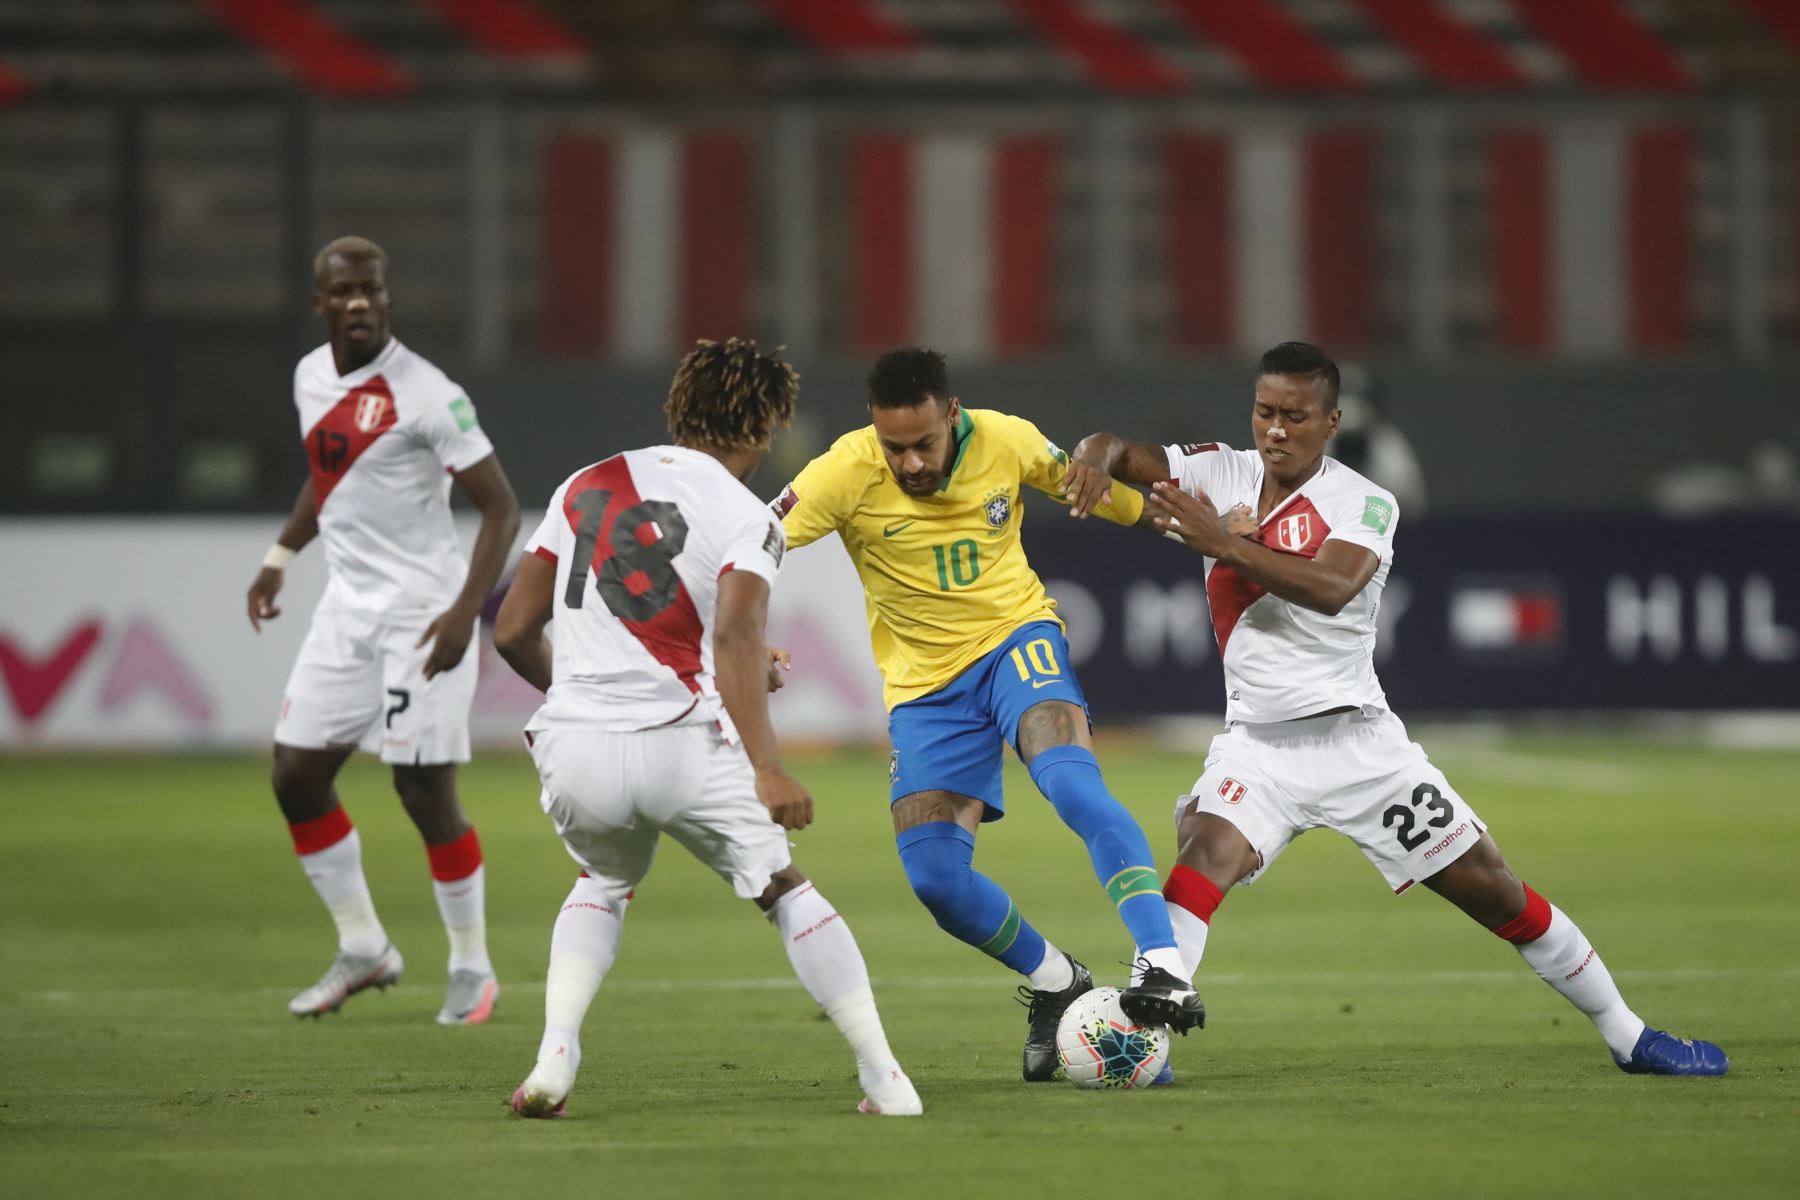 Perú enfrenta a brasil por la segunda fecha de las eliminatorias rumbo a Qatar 2022. Neymar de Brasil marcado por Aquino y André Carrillo

Foto: Pool/FPP